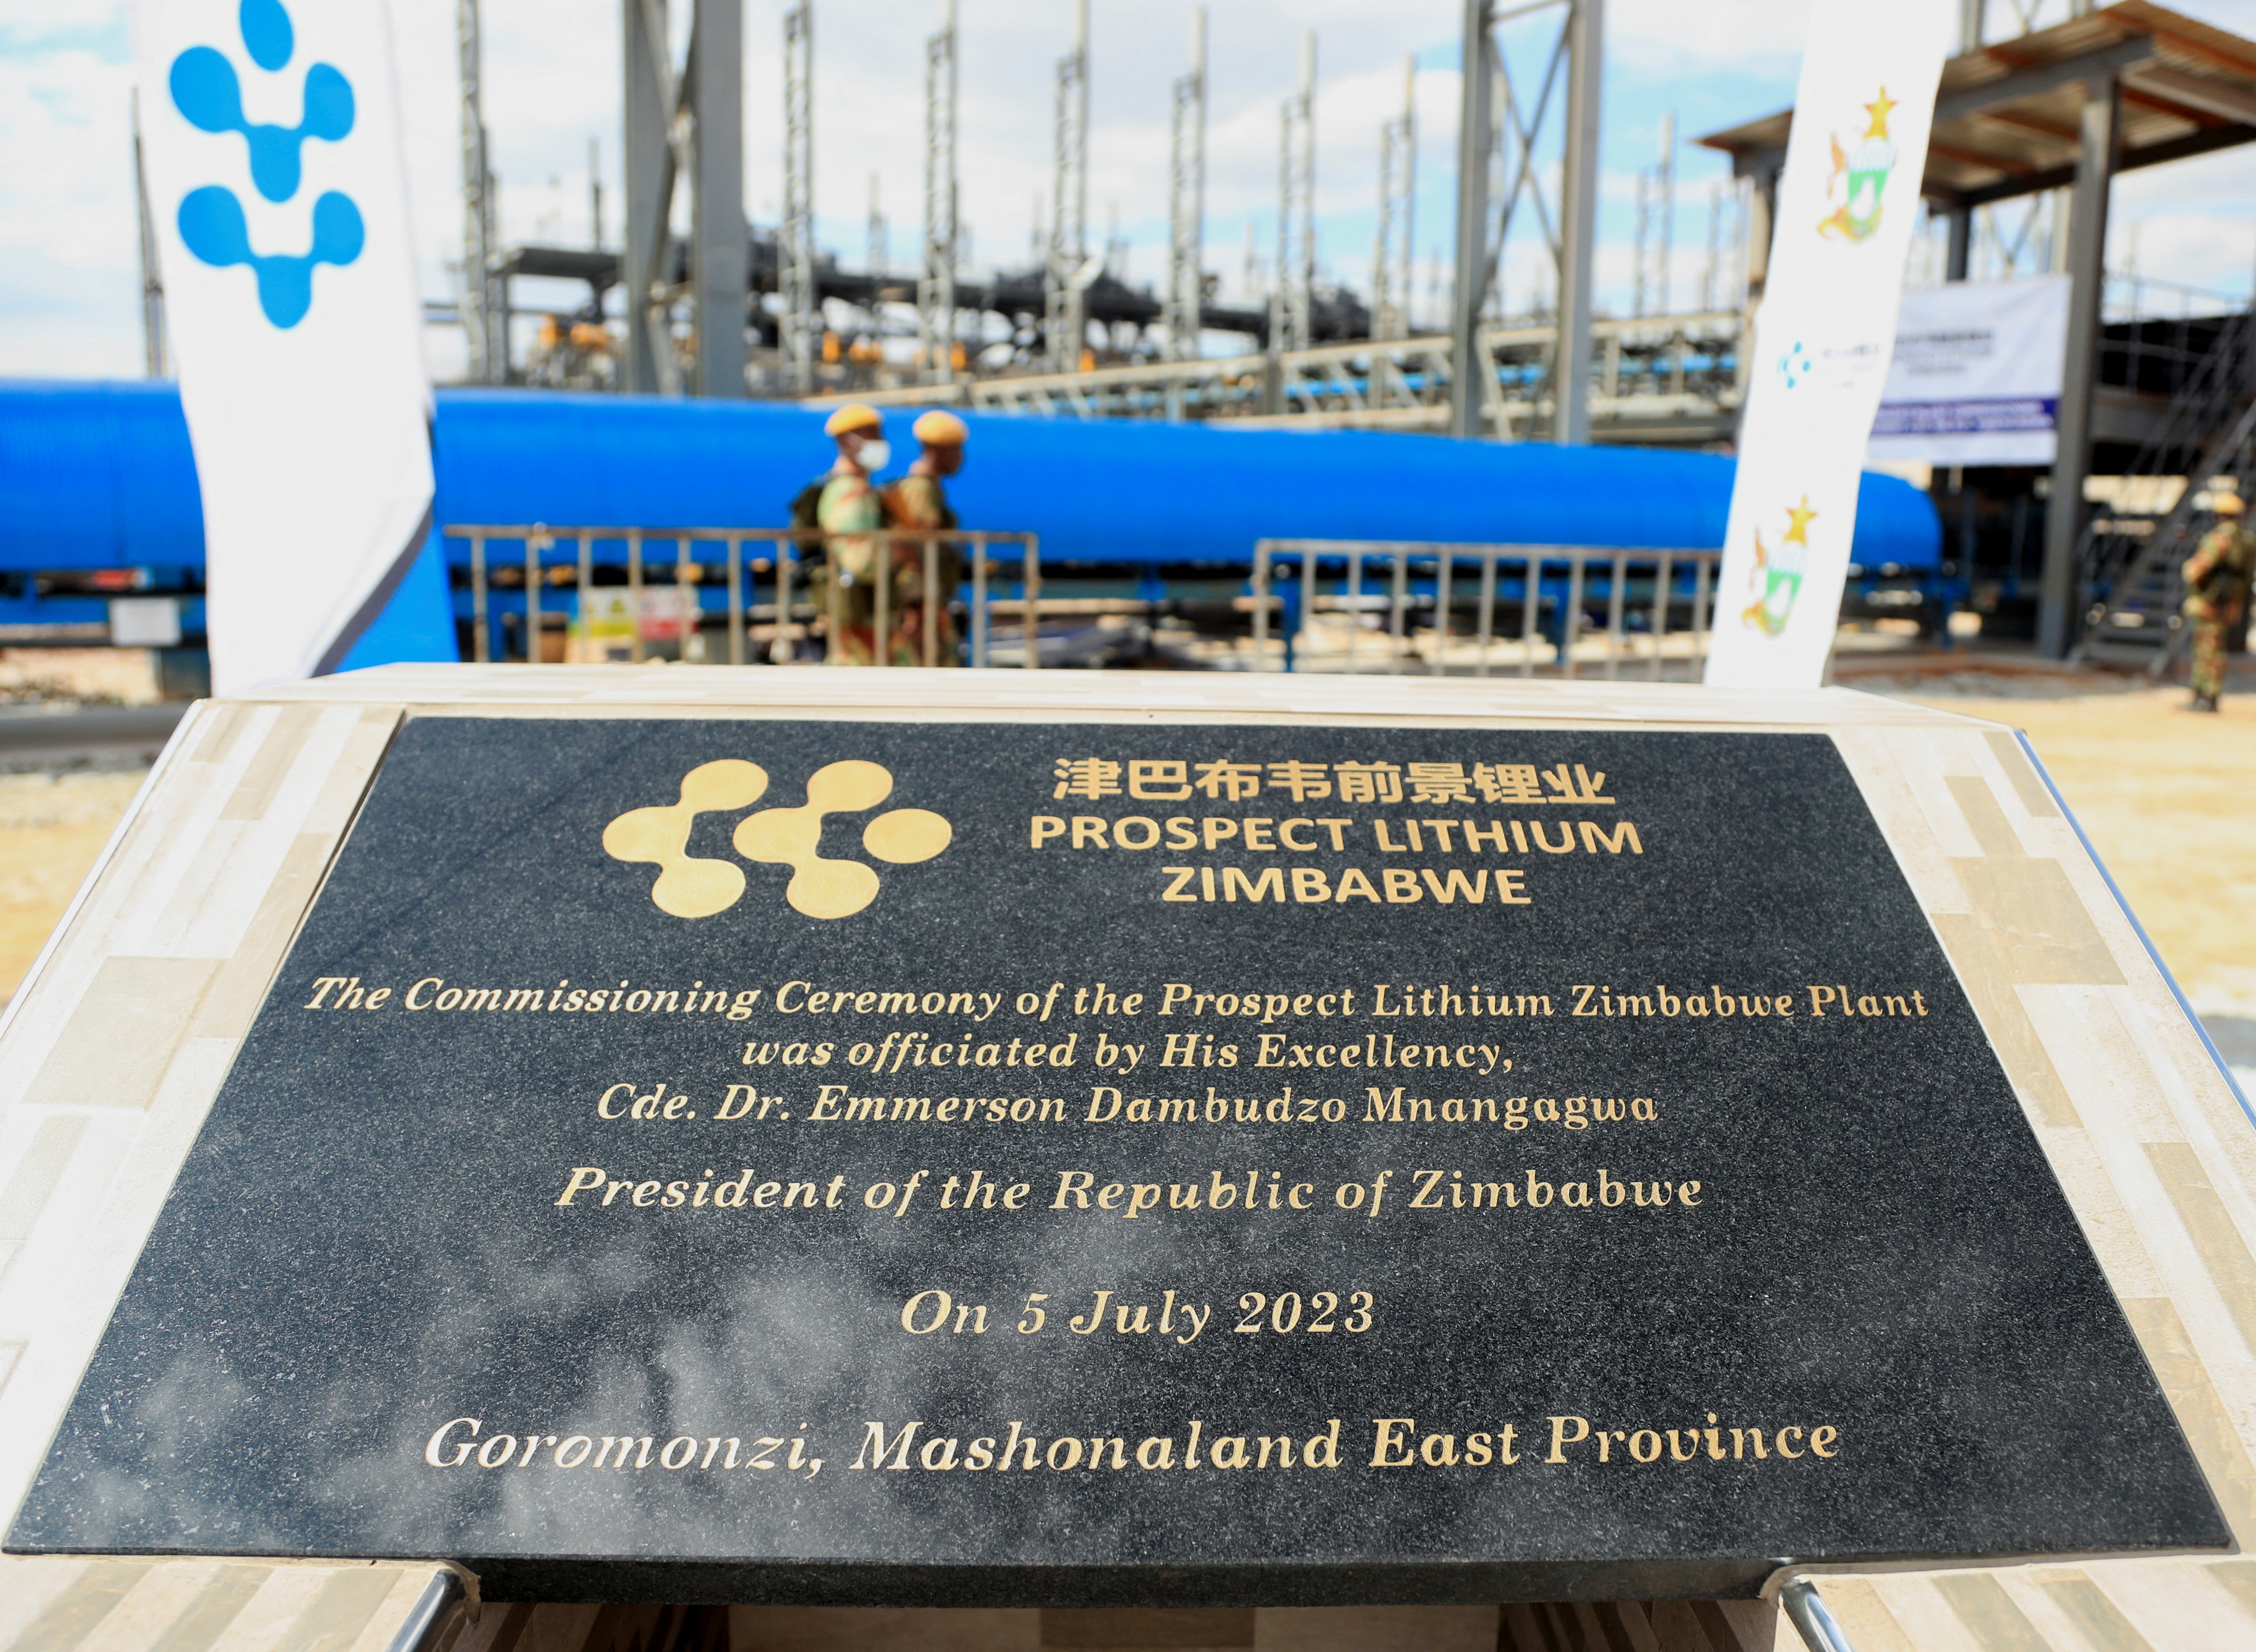 China's Huayou commissions $300 million Zimbabwe lithium plant